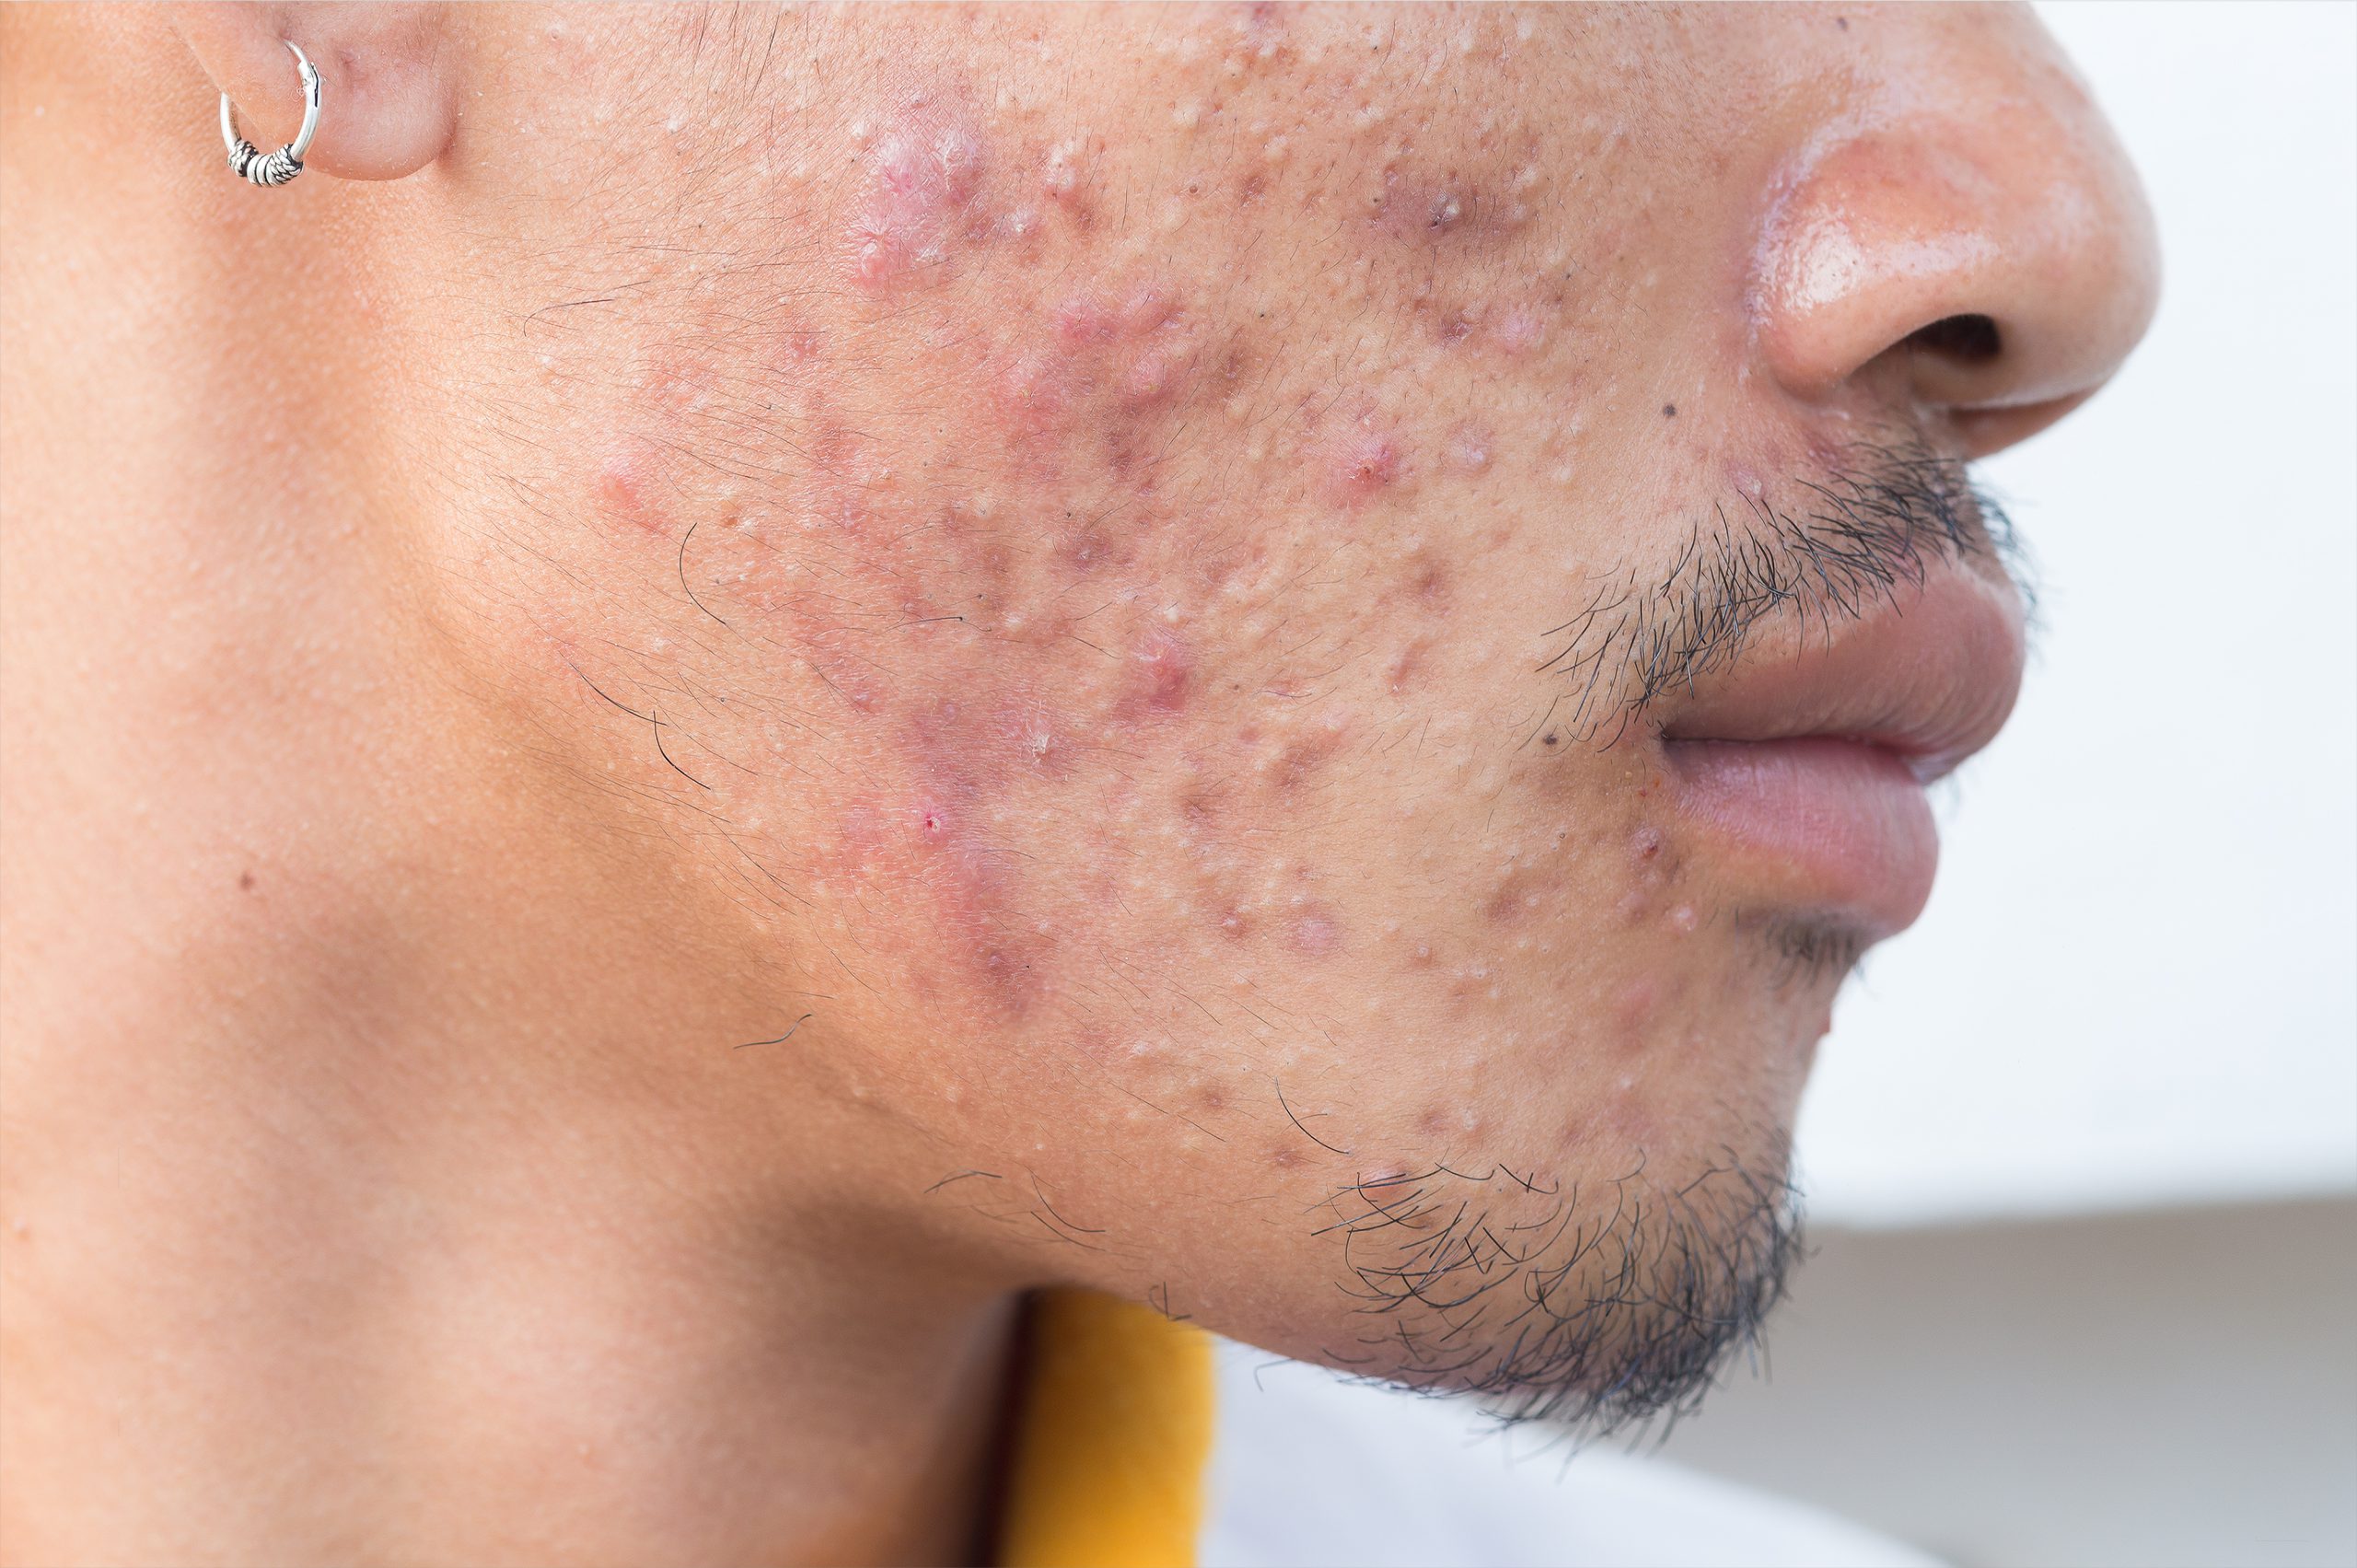 Acne, puisten en ontstekingen op de wang van een jonge man, kunnen behandeld door de huidtherapeut door middel van een acnebehandeling